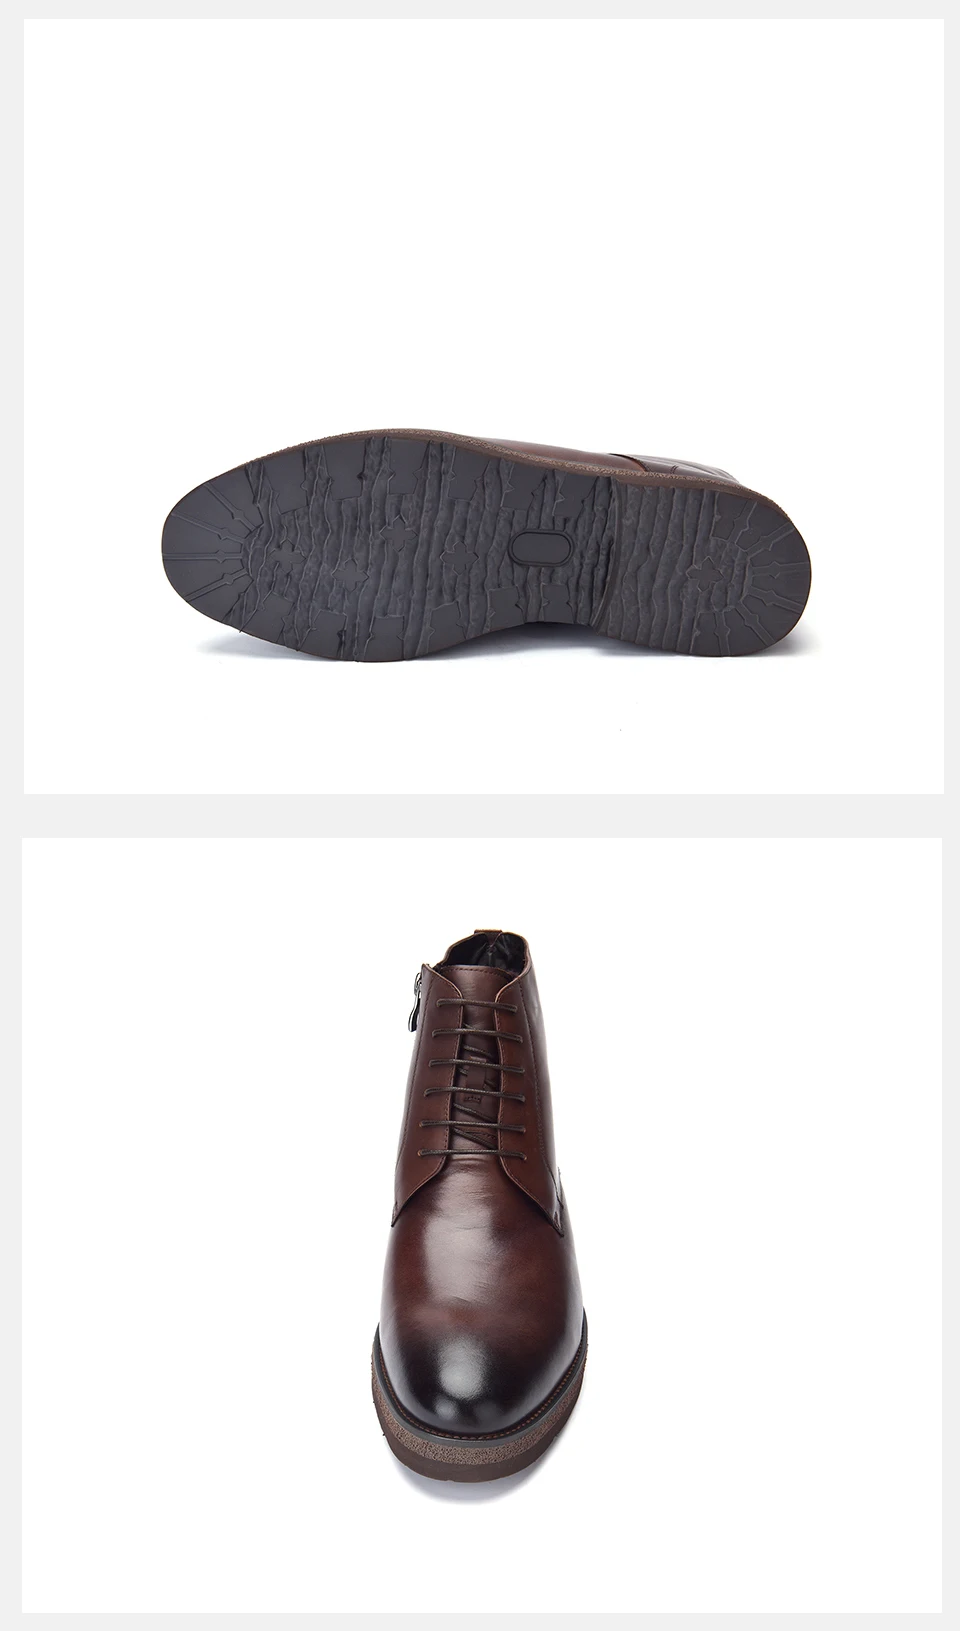 Jackmiller/зимние мужские ботинки из коровьей кожи Мужские классические ботинки коричневого цвета с шерстяной подкладкой теплые мужские ботильоны на шнуровке Большие размеры 40-44